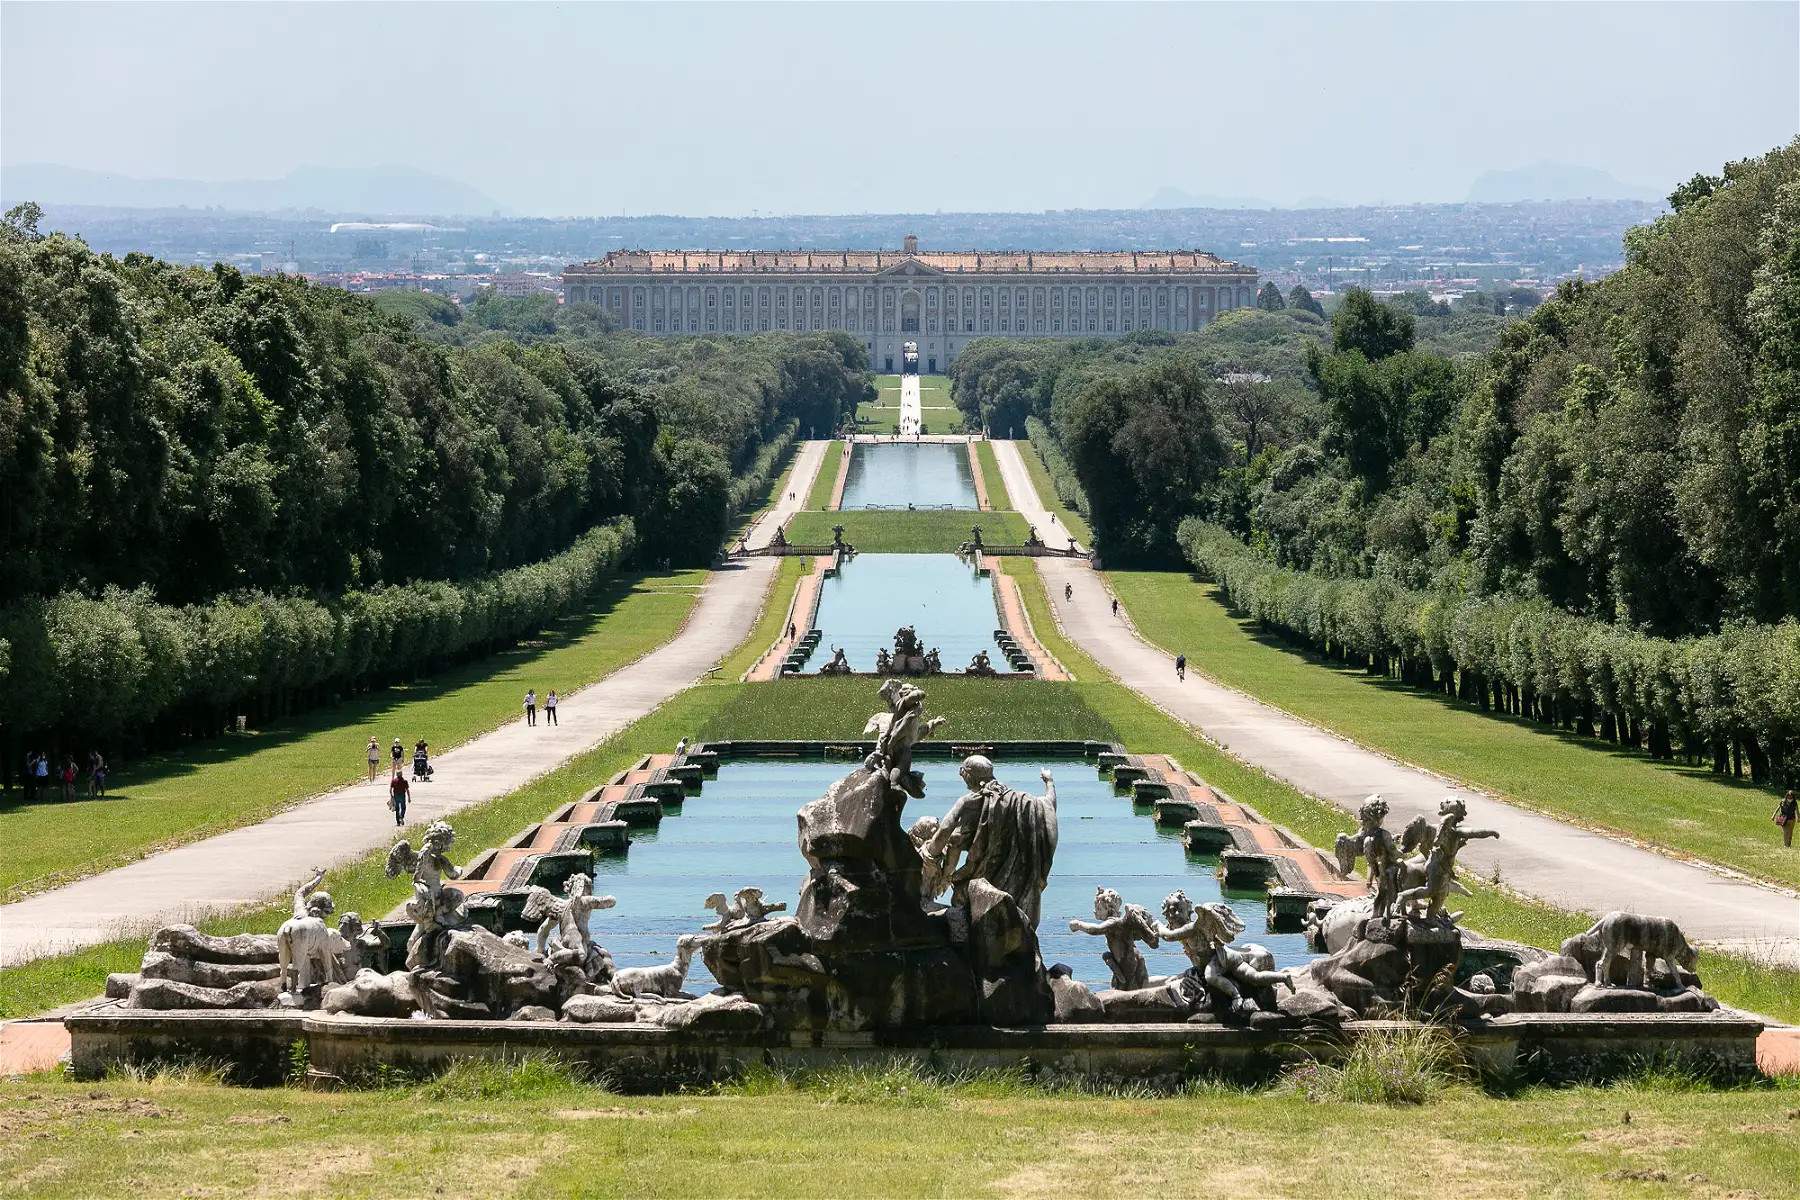 Ouverture au public de la Reggia di Caserta, l'aile nord-ouest du Palais royal. 3000 mètres carrés supplémentaires ouverts au public 